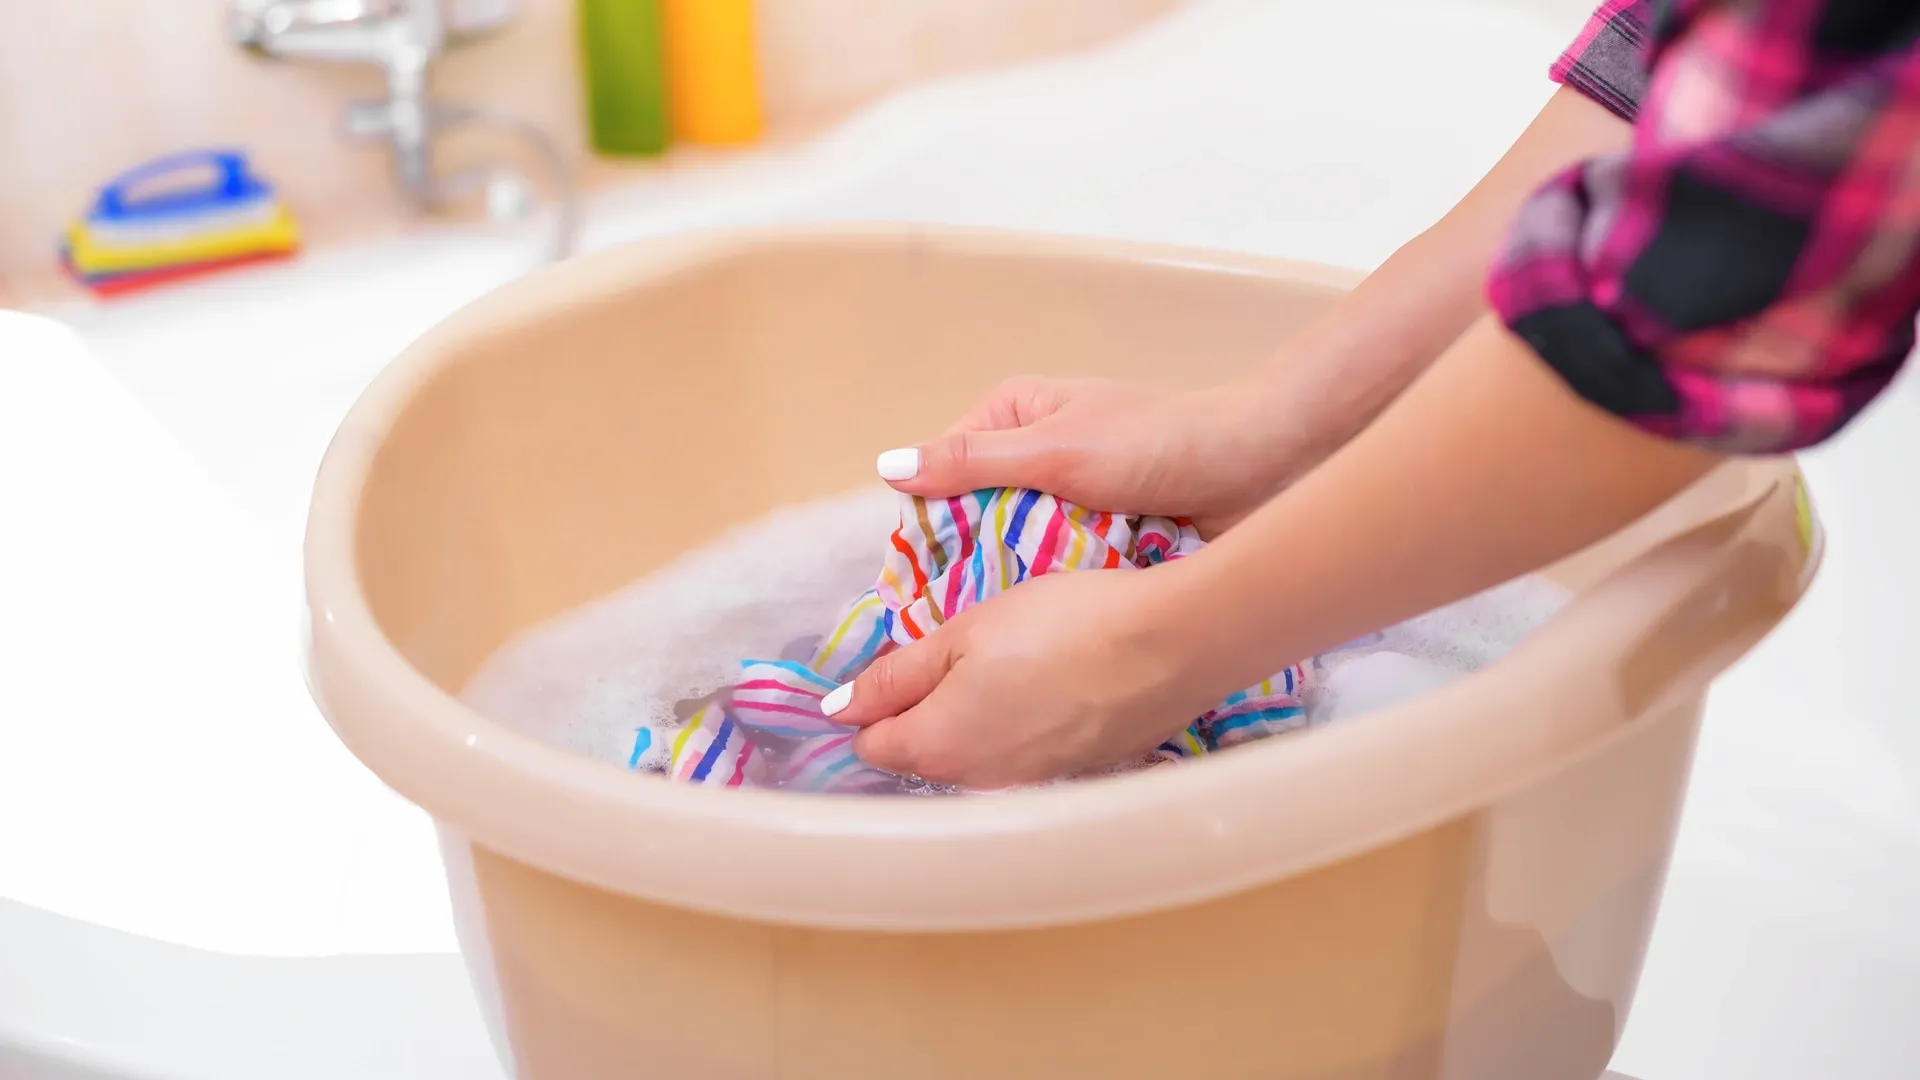 Mulher lavando roupa colorida à mão em uma bacia